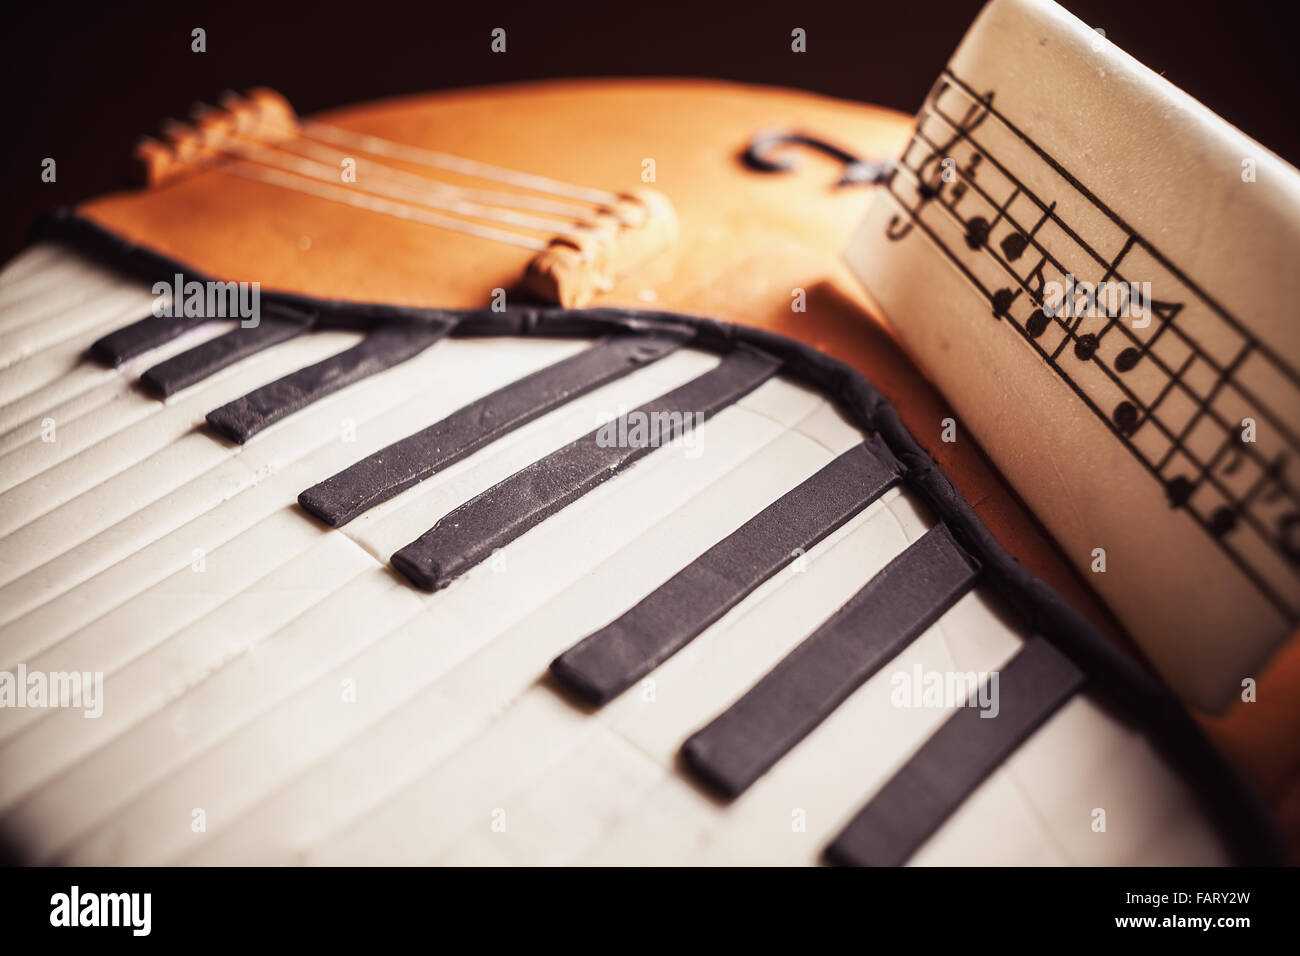 Geburtstagskuchen verziert mit Fondant, gerundet, Klavier und Cello Instrumente symbolisch zu präsentieren. Stockfoto